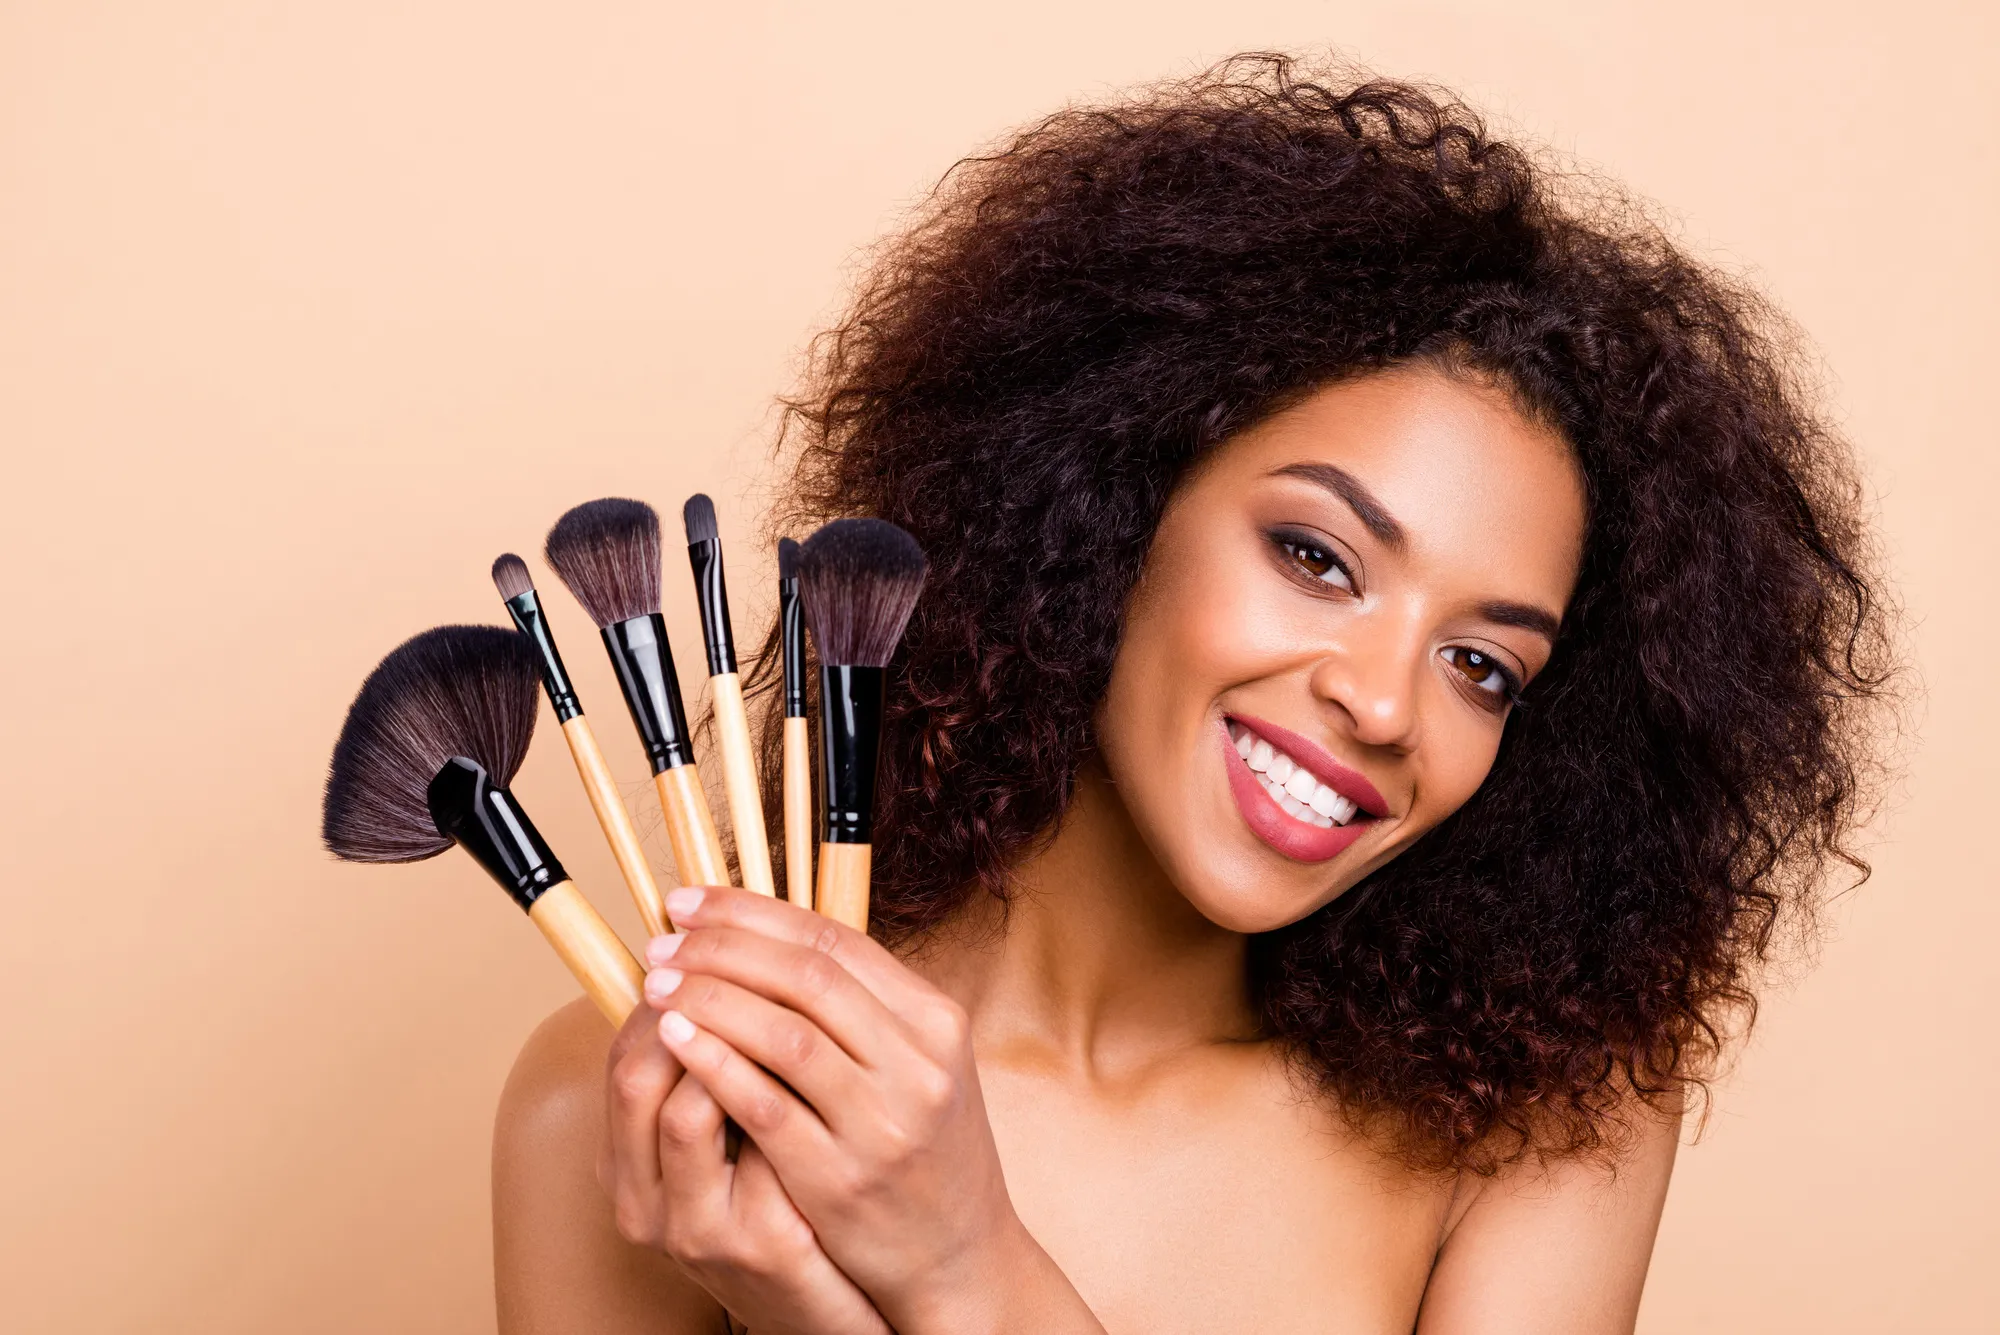 Инструменты и кисти для макияжа: как правильно использовать и ухаживать за ними